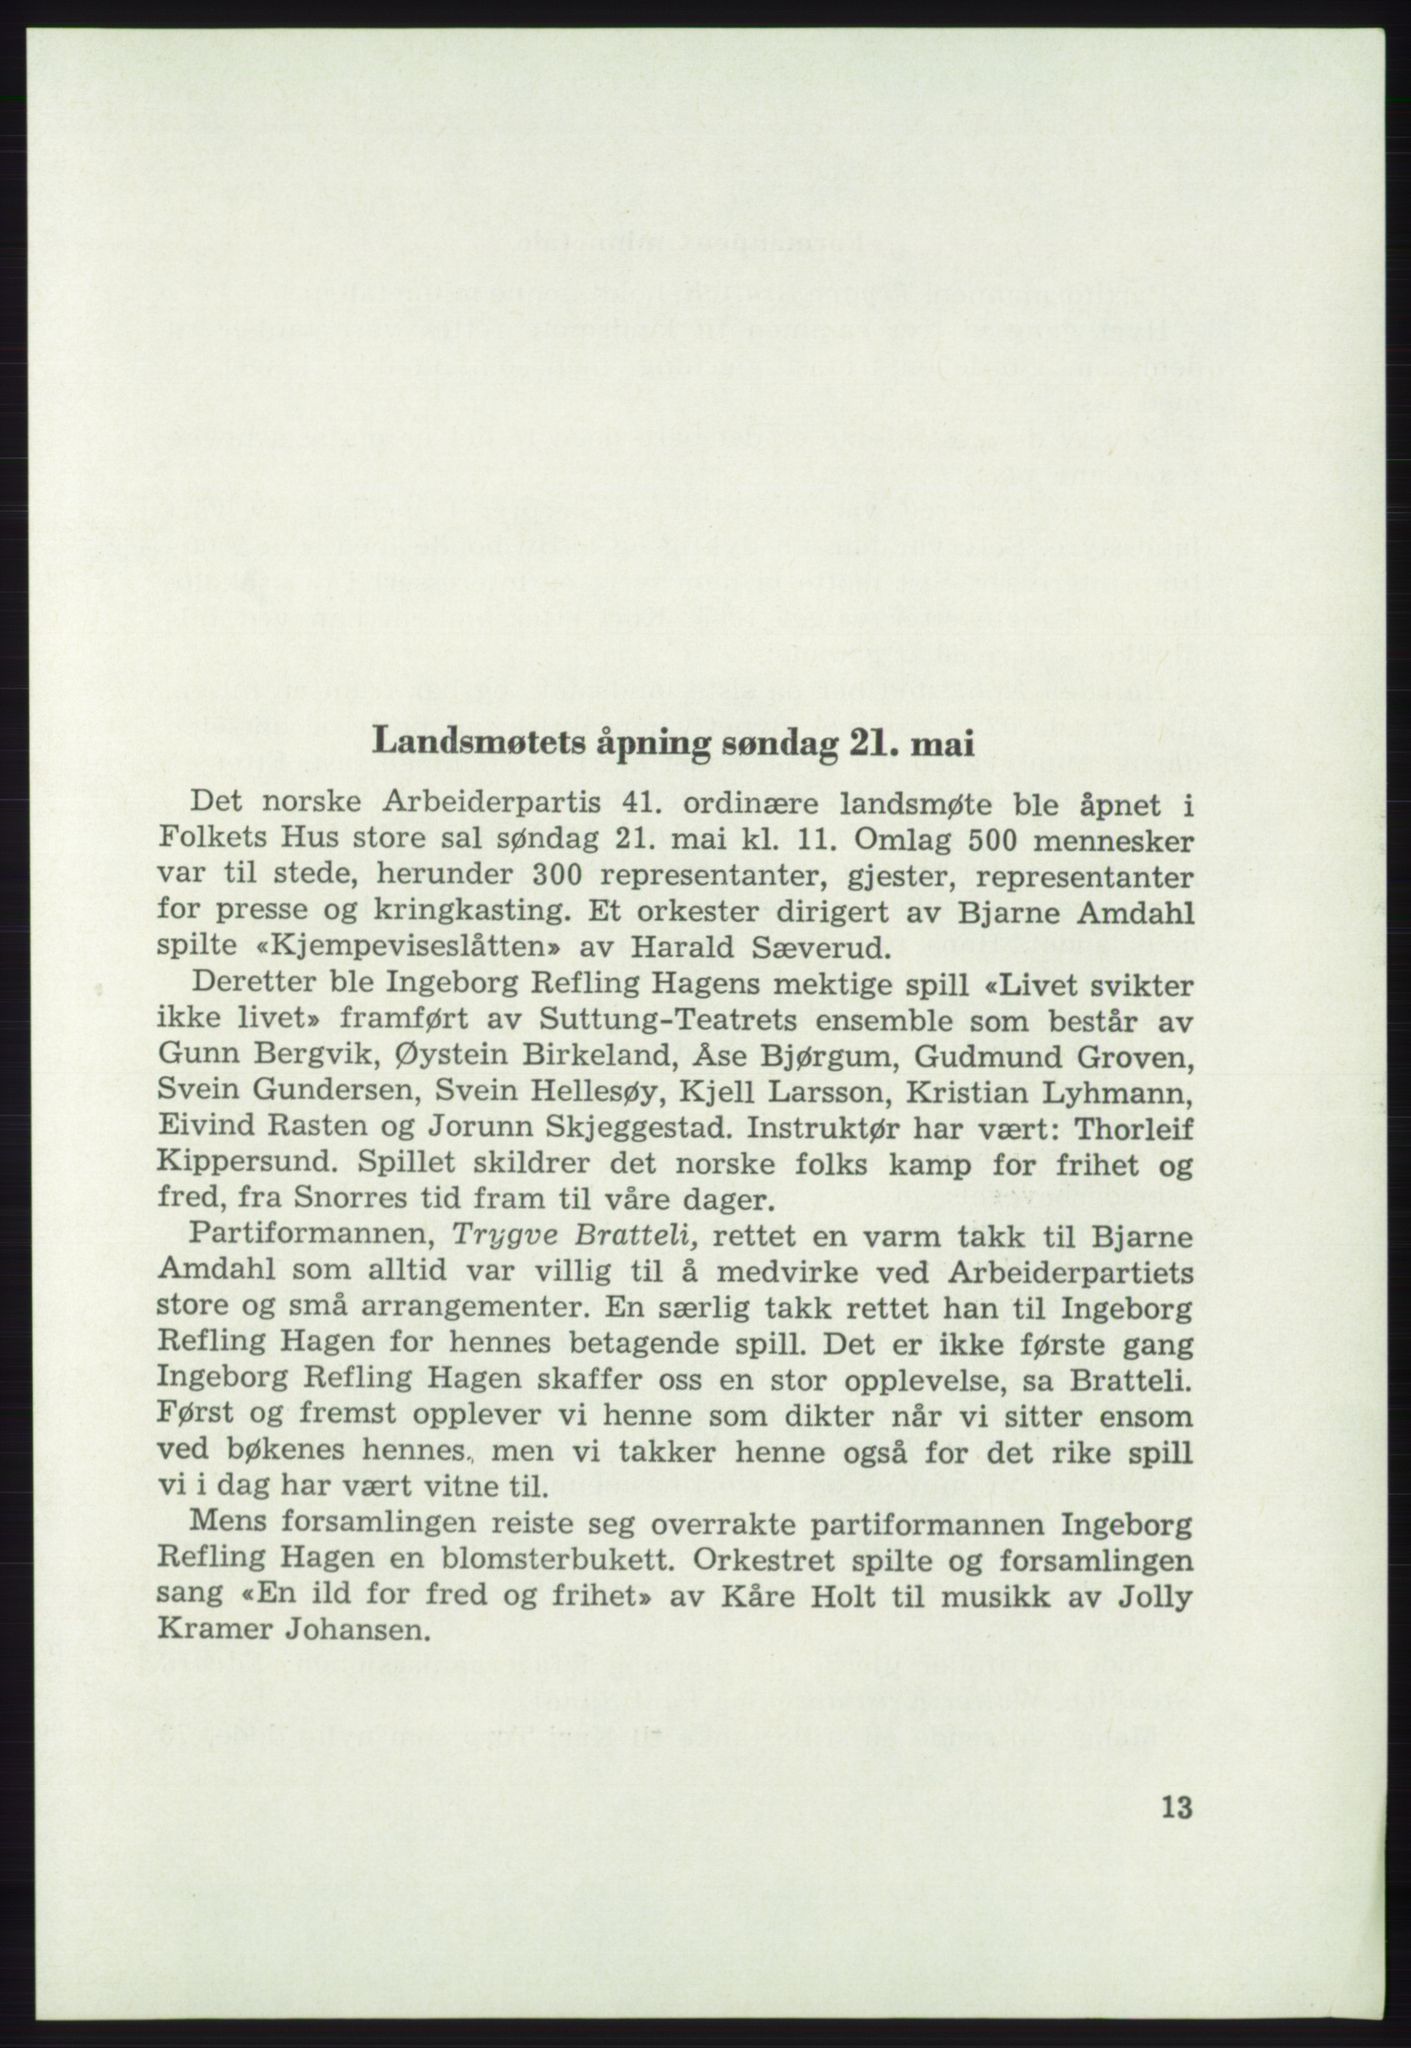 Det norske Arbeiderparti - publikasjoner, AAB/-/-/-: Protokoll over forhandlingene på det 41. ordinære landsmøte 21.-23. mai 1967 i Oslo, 1967, s. 13